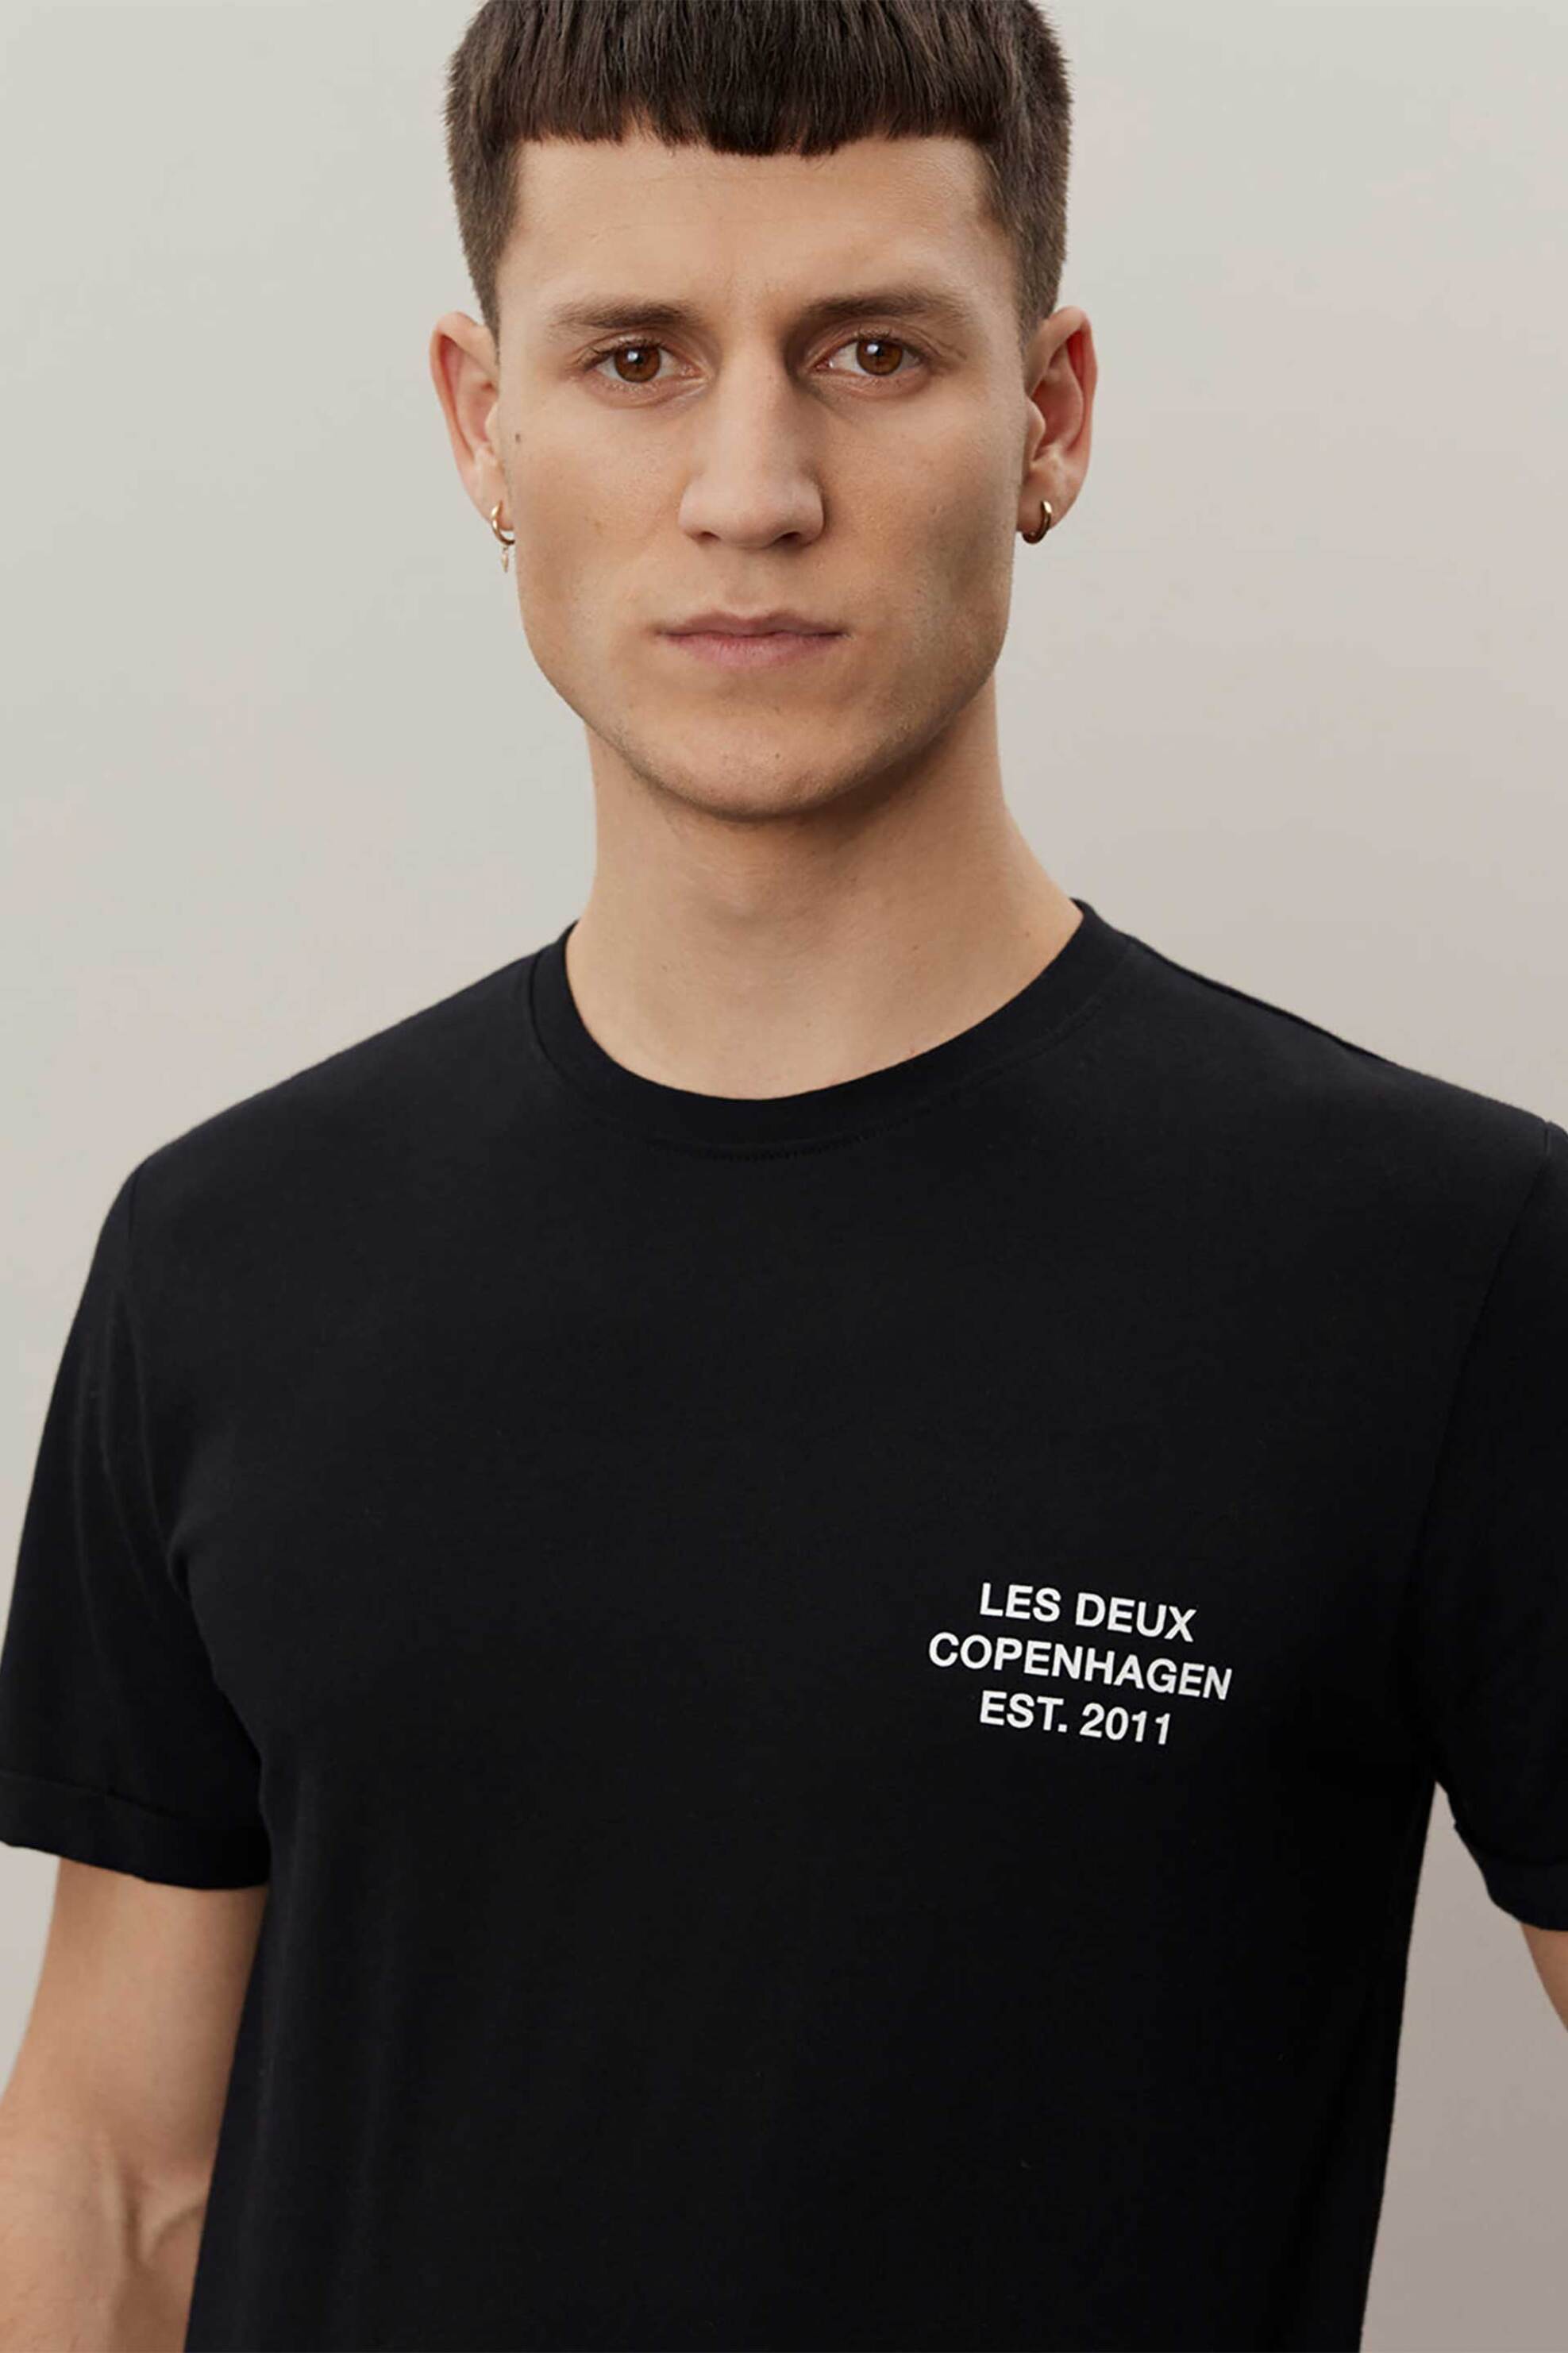 Ανδρική Μόδα > Ανδρικά Ρούχα > Ανδρικές Μπλούζες > Ανδρικά T-Shirts Les Deux ανδρικό T-shirt Slim Fit "Copenhagen 2011" - LDM101165 Μαύρο